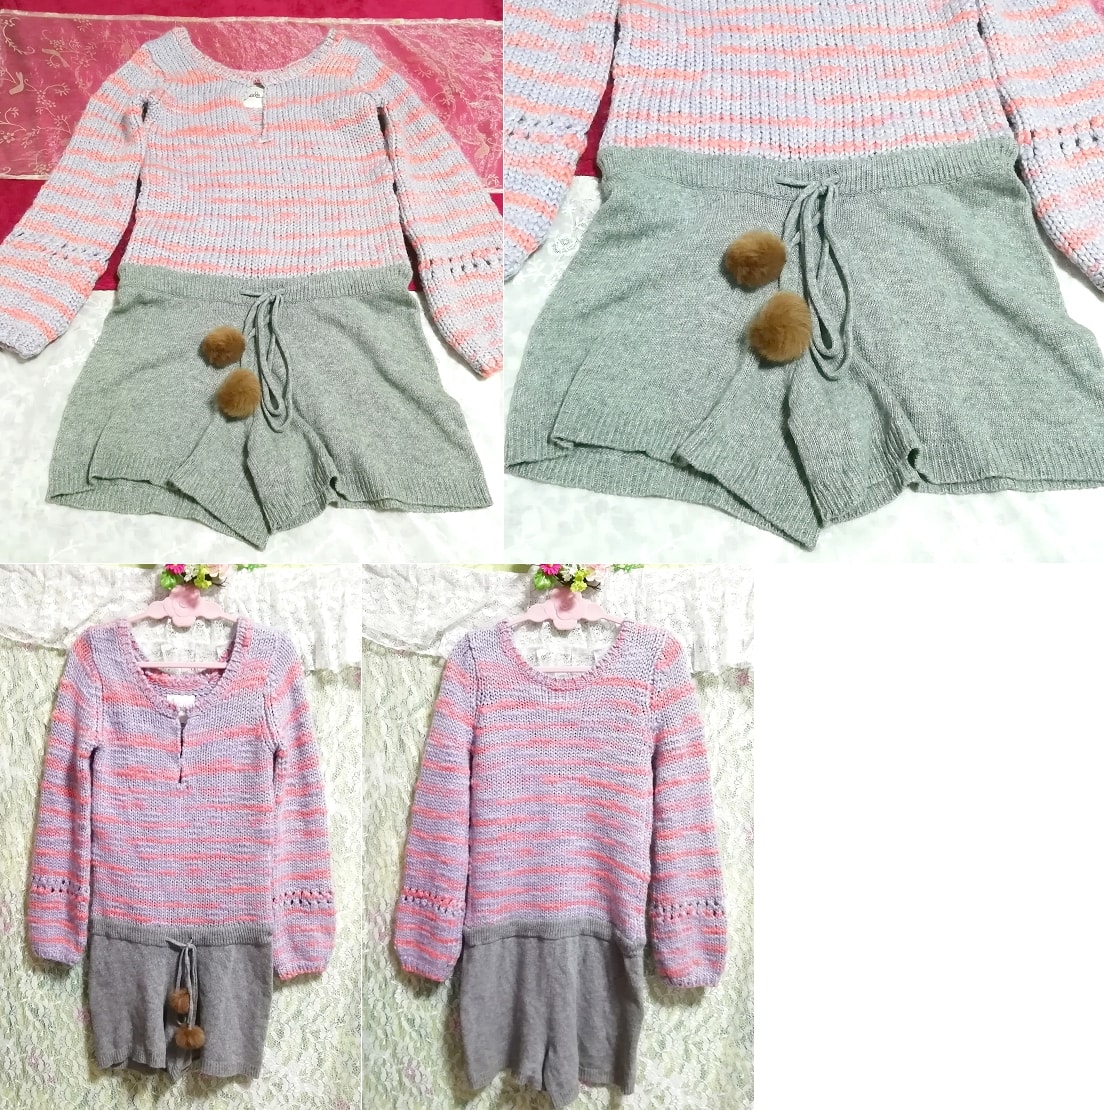 Robe pull bonbon en fourrure de lapin gris cendré tricoté bleu rose, tricoter, pull-over, manche longue, taille m